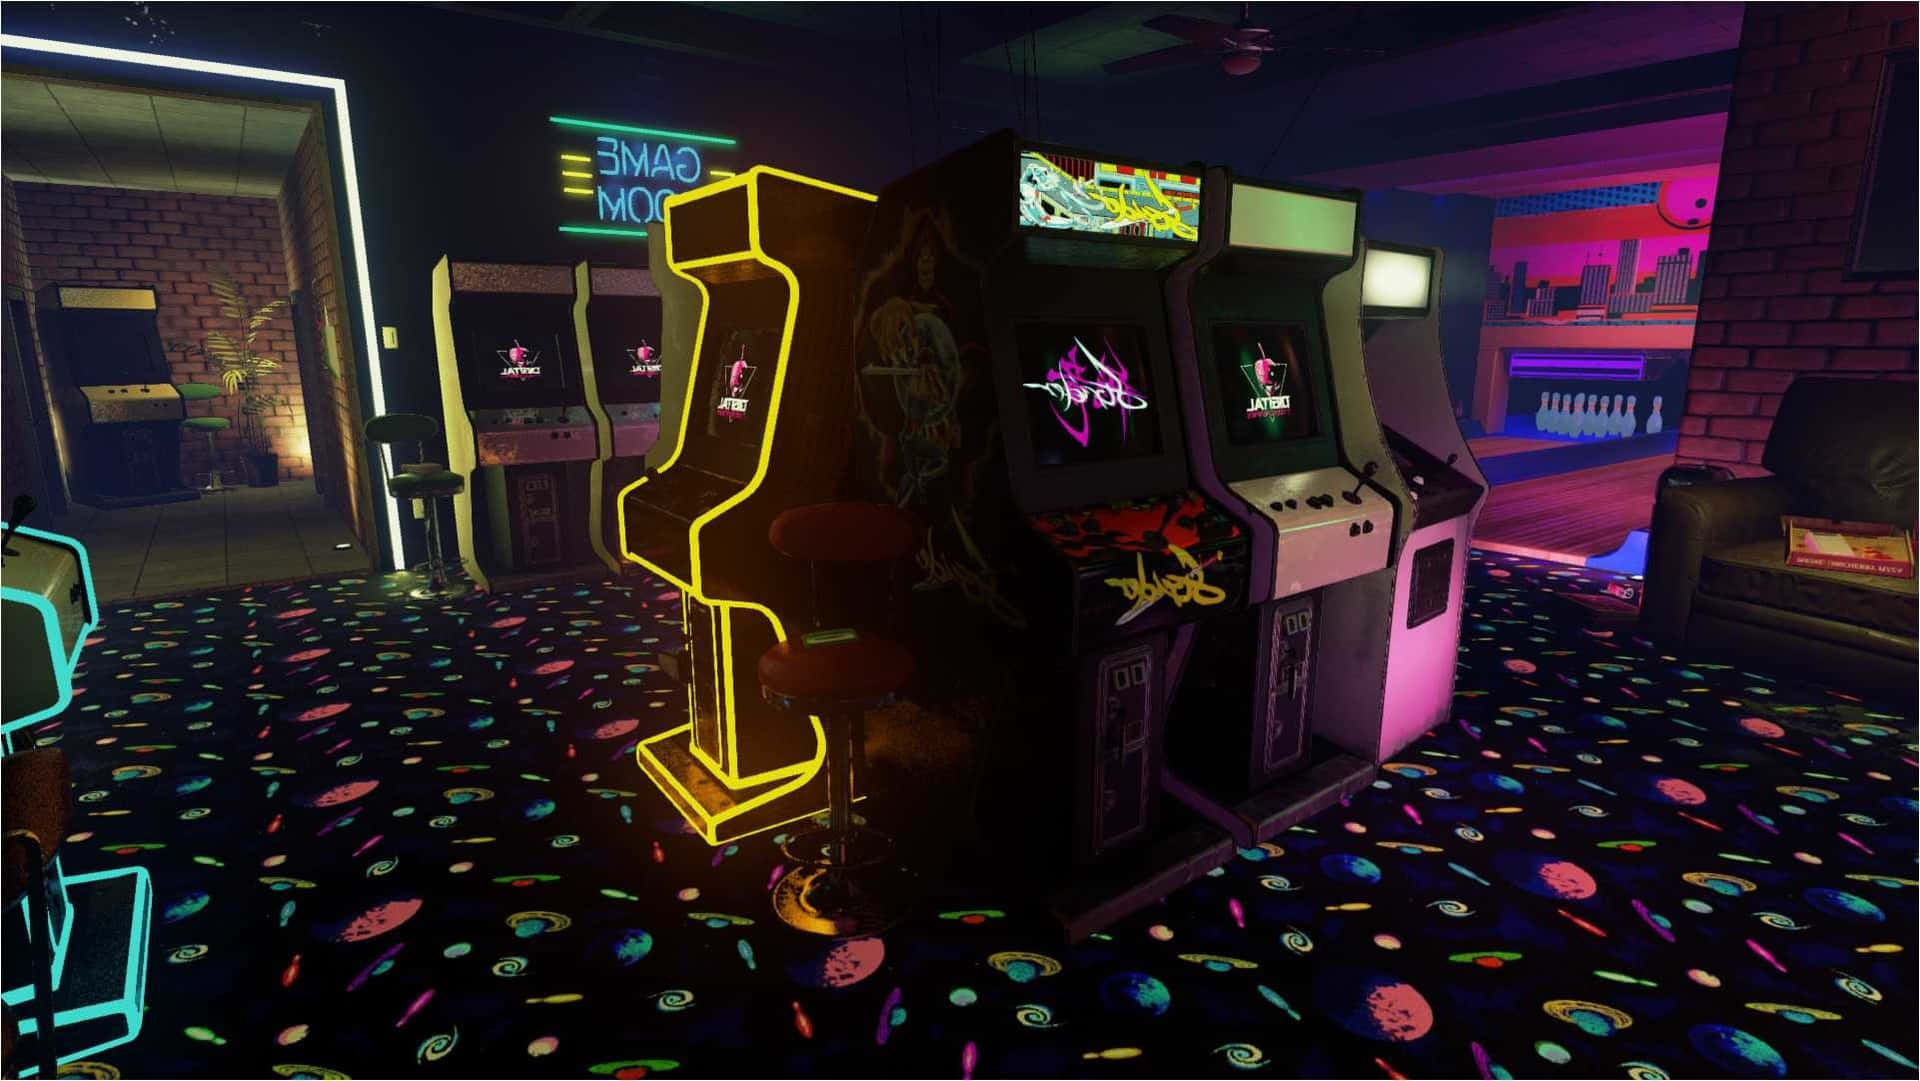 Eineaufregende Nostalgische Vision, Dieser 80er Jahre Retro-arcade-automat Sorgt Für Das Perfekte Nostalgische Erlebnis. Wallpaper